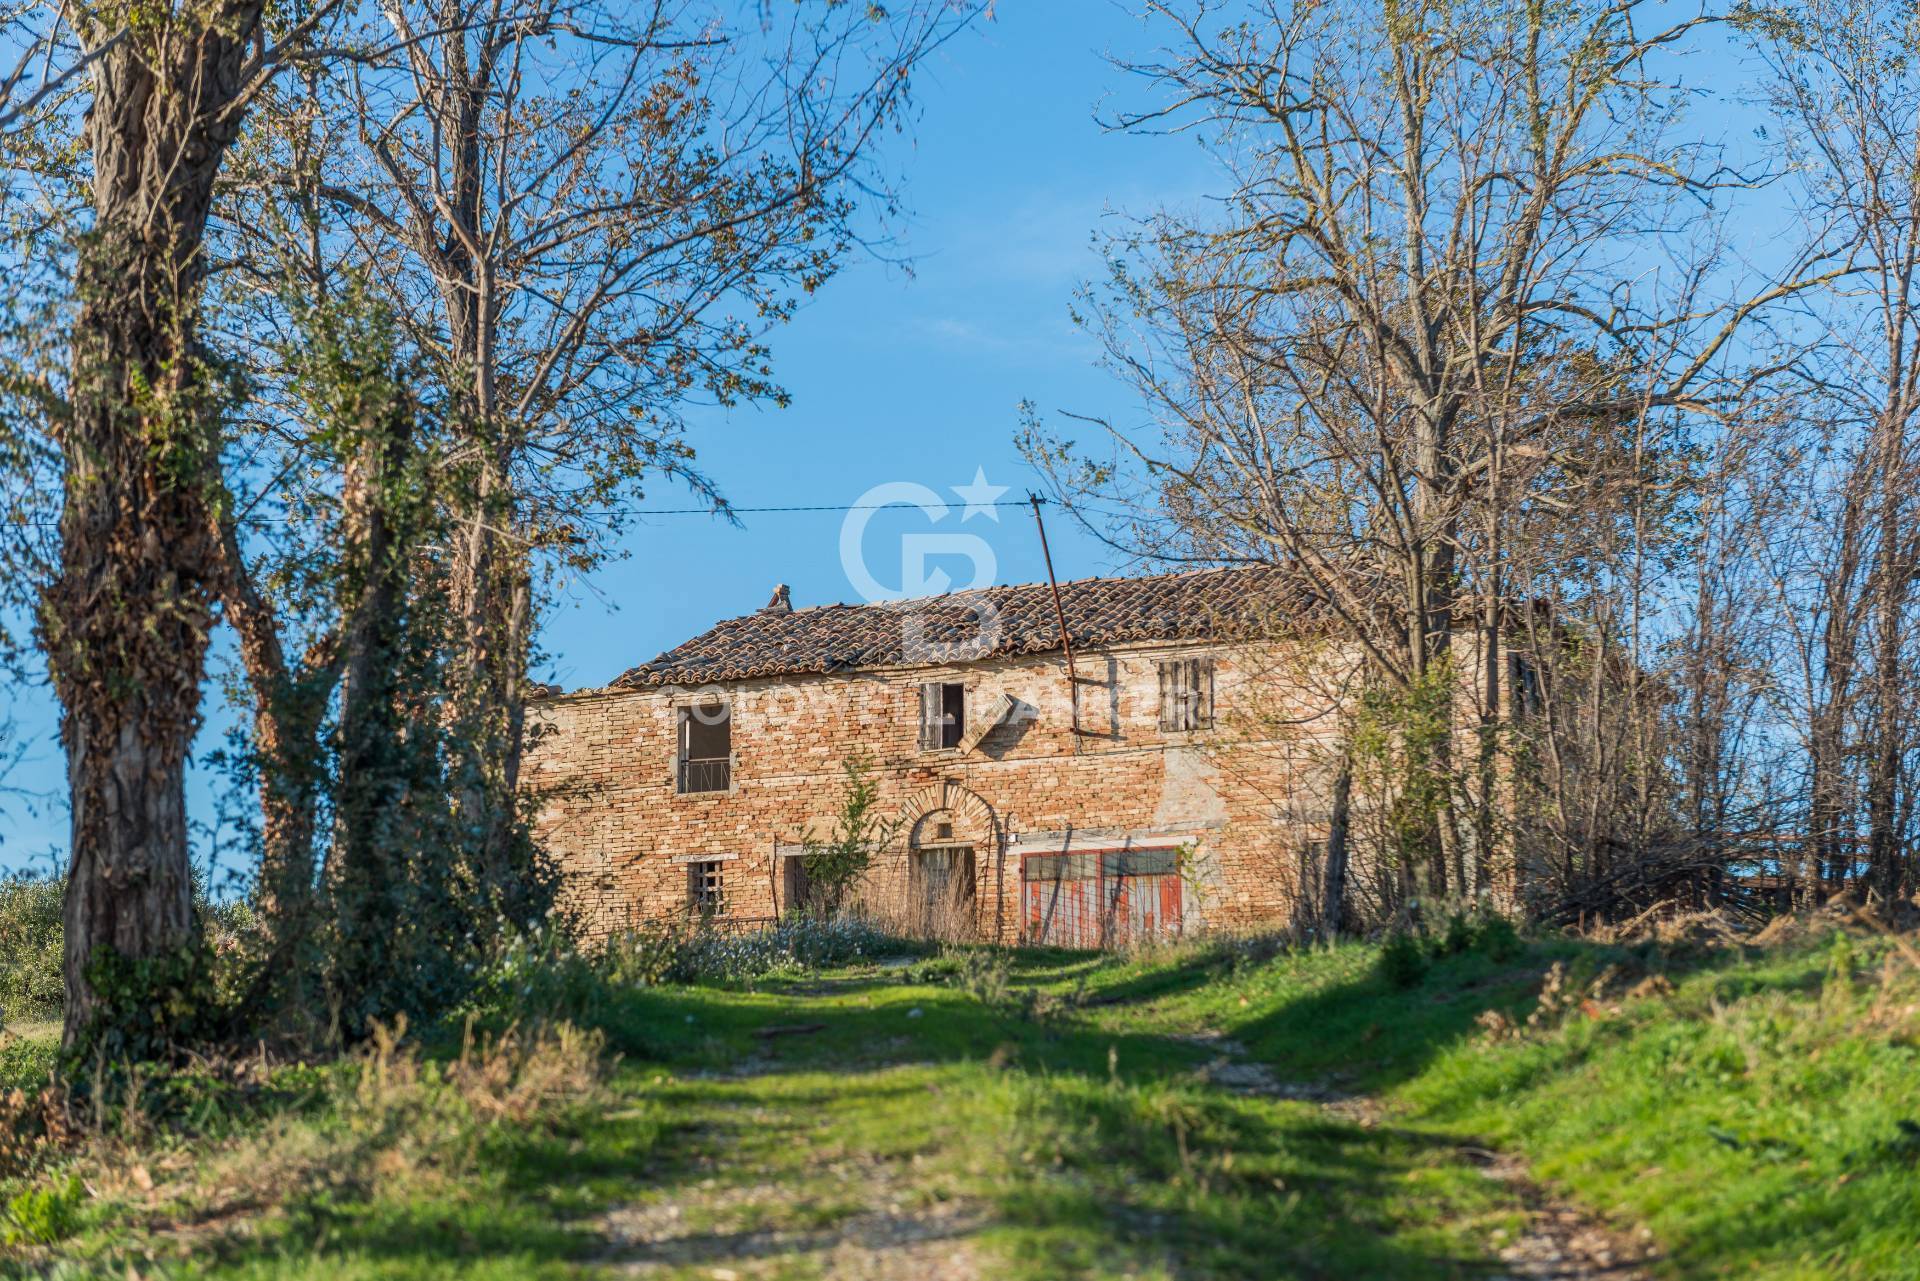 Rustico / Casale in vendita a Mondavio, 5 locali, zona Località: SanMichelealFiume, prezzo € 98.000 | PortaleAgenzieImmobiliari.it